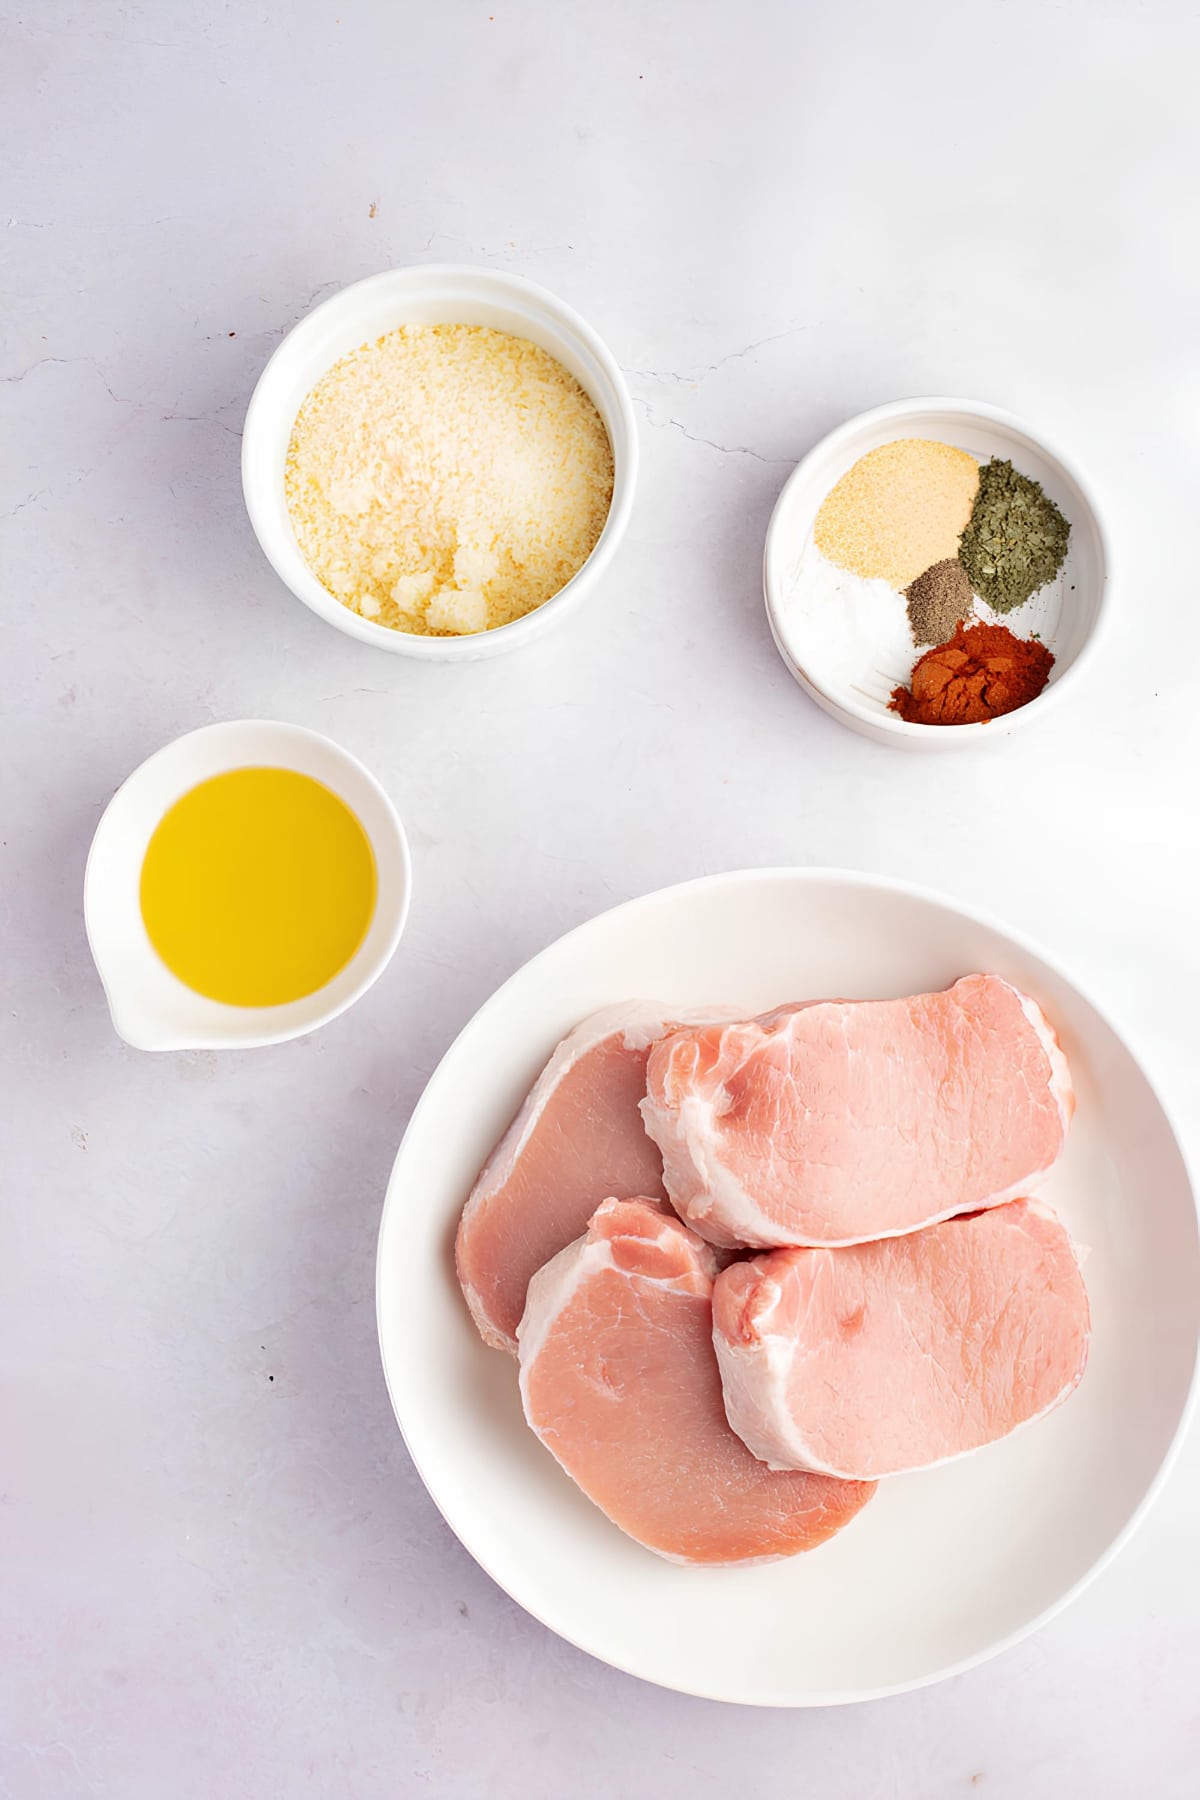 Air Fryer Pork Chops Recipe Ingredients: Fresh pork chops, bread crumbs, seasoning and olive oil. 